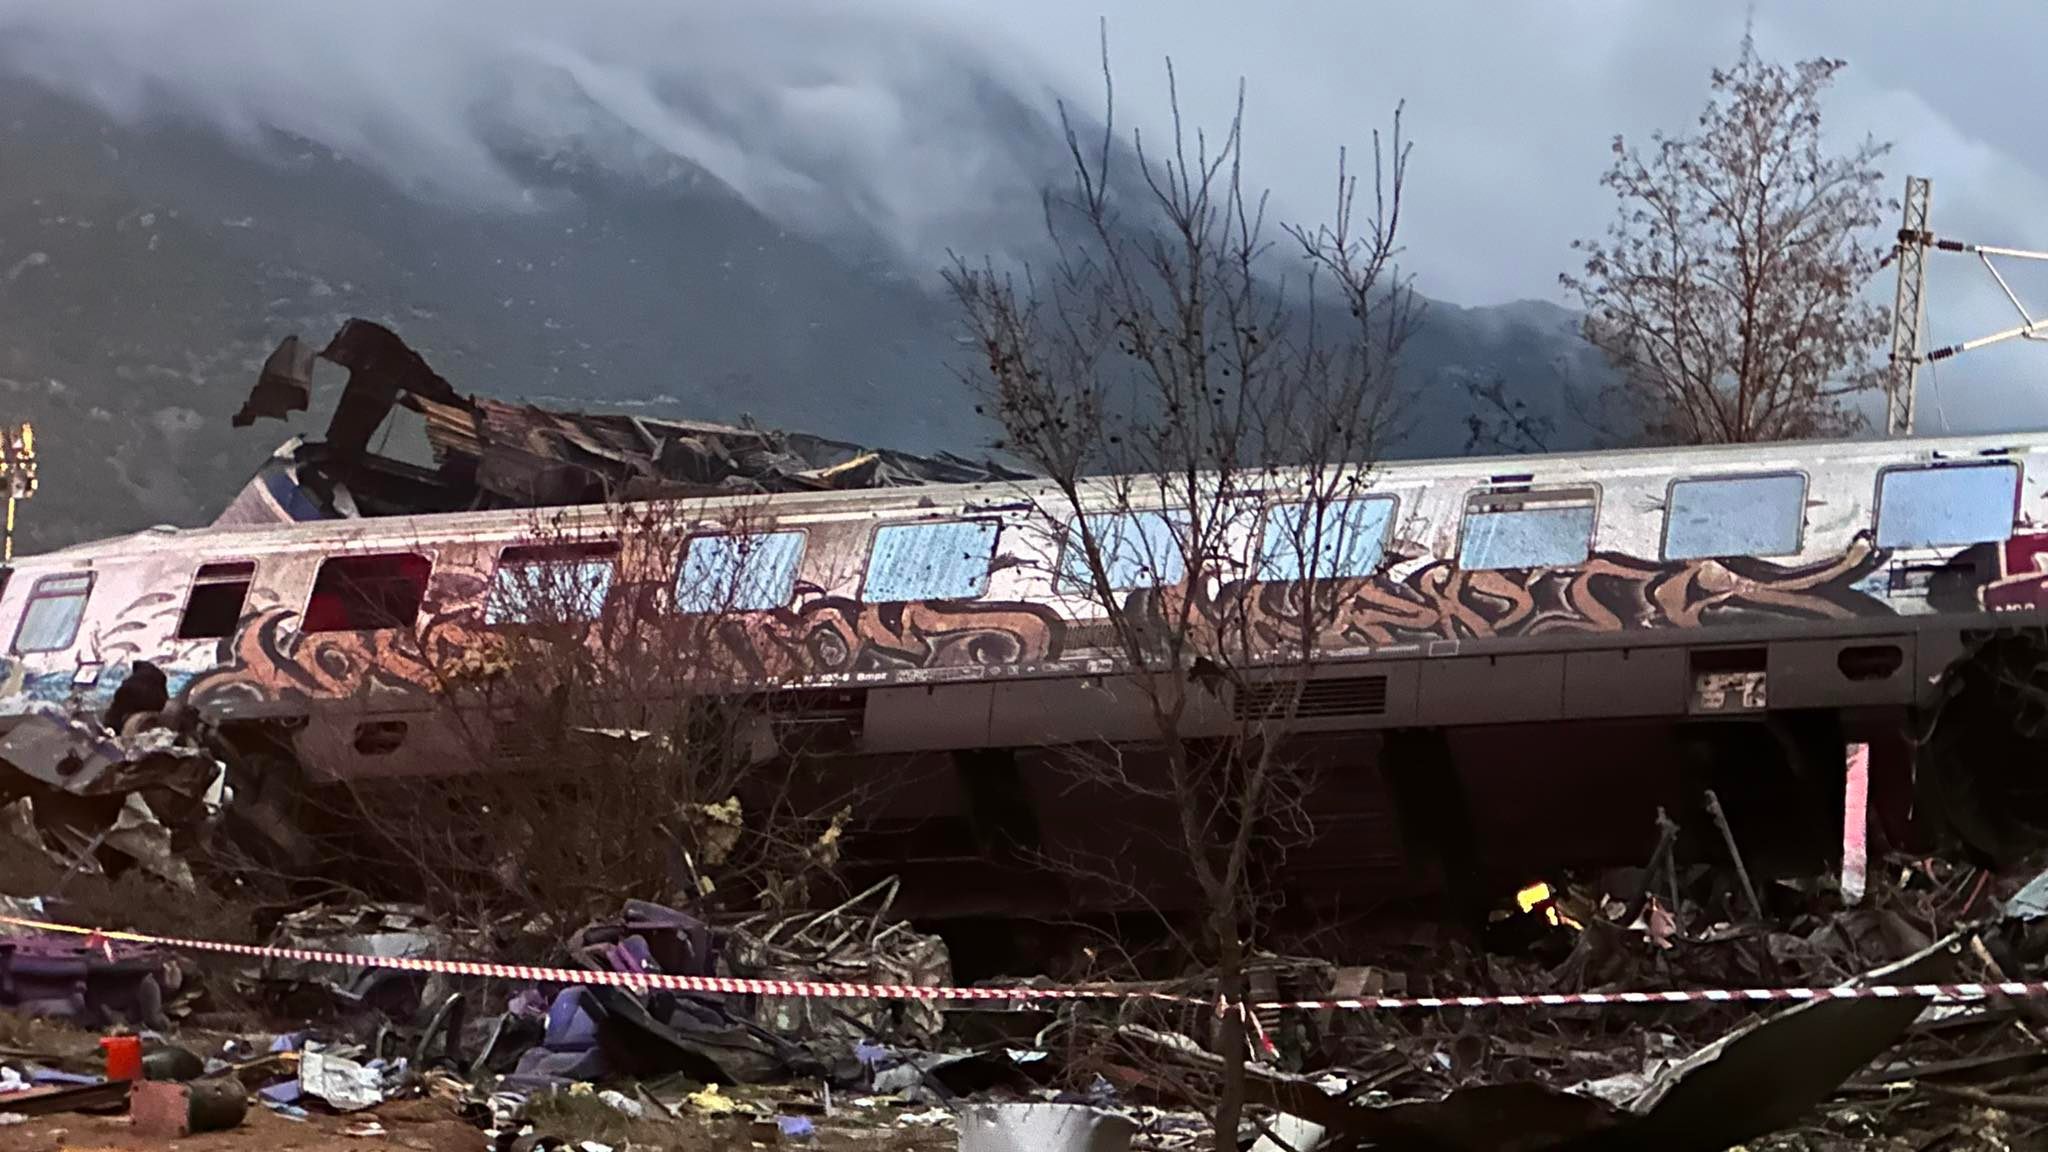 Η Ευρωπαϊκή Αρχή Σιδηροδρόμων με έκθεσή της από το 2022 είχε προειδοποιήσει την κυβέρνηση για την τραγωδία στα Τέμπη